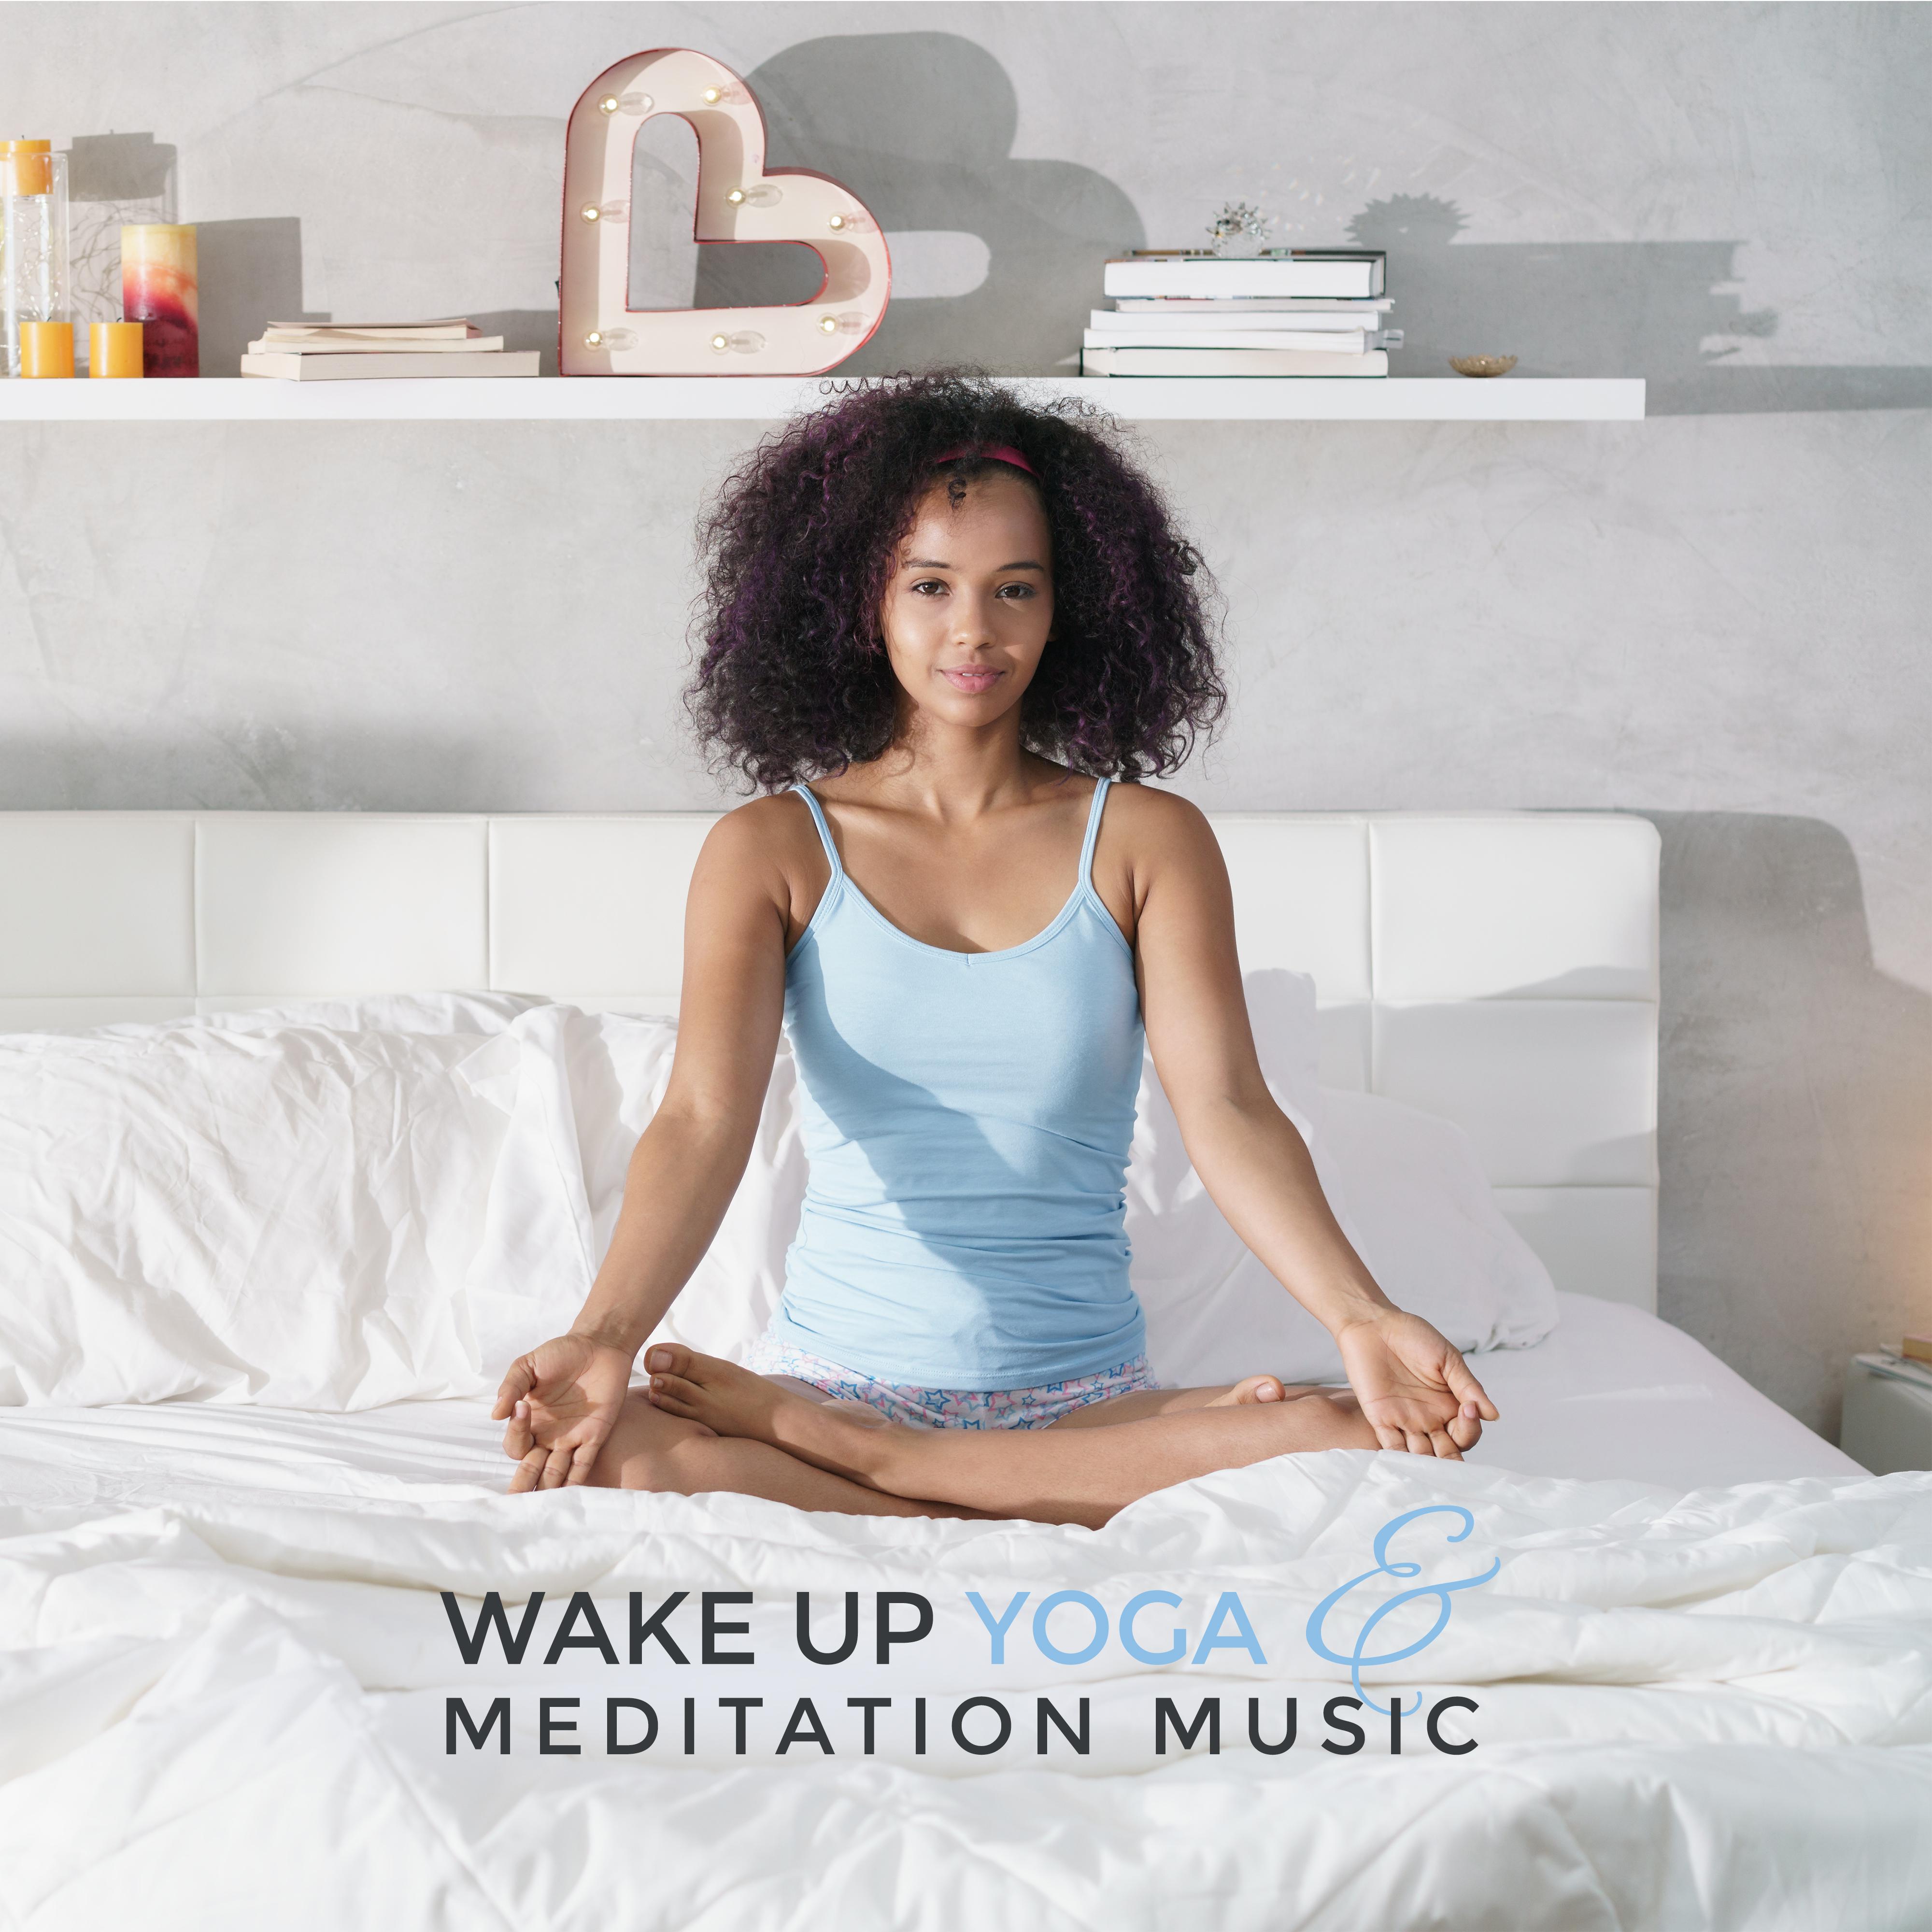 Wake Up Yoga & Meditation Music